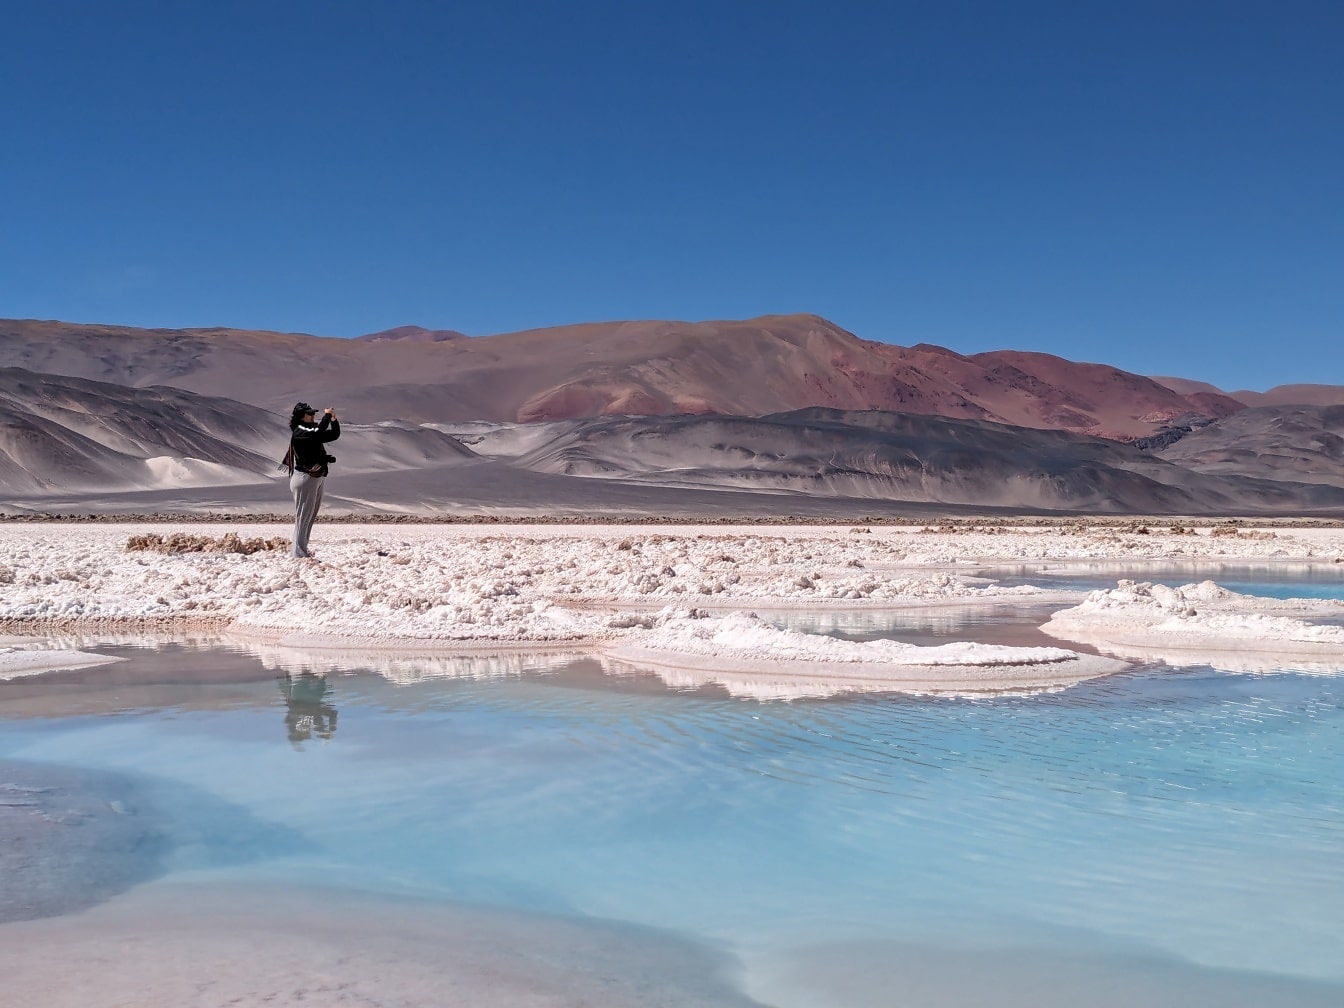 Турист стоїть на пляжі солоного озера пустелі і фотографує пейзаж пустельного оазису